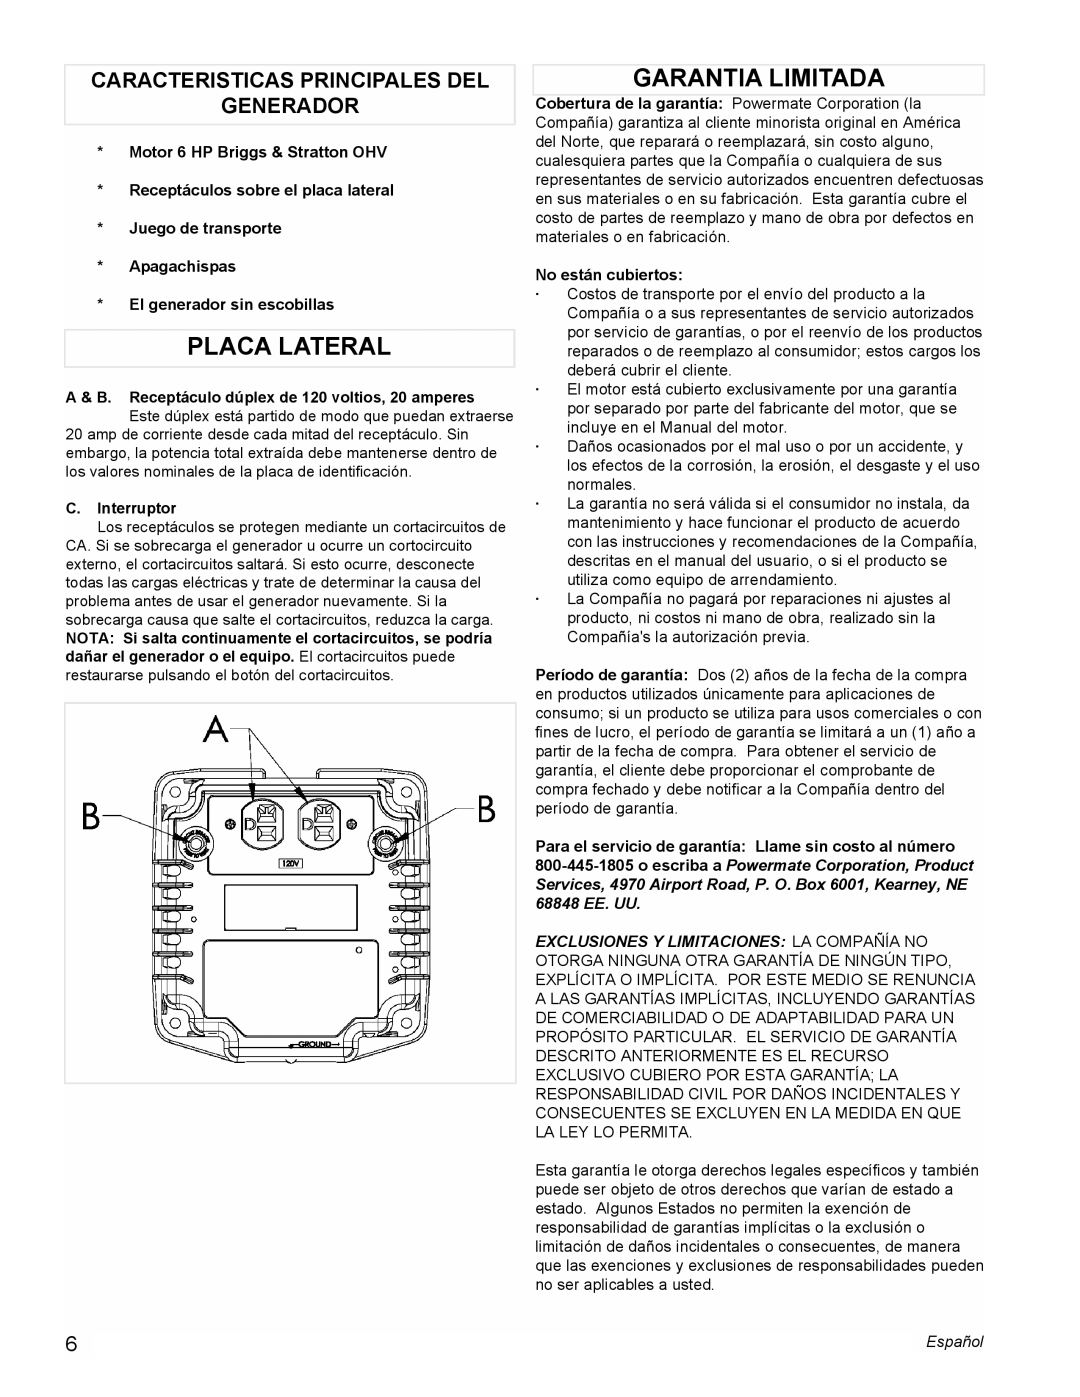 Powermate PMC543000 manual Placa Lateral, Garantia Limitada, Caracteristicas Principales Del Generador, C.Interruptor 